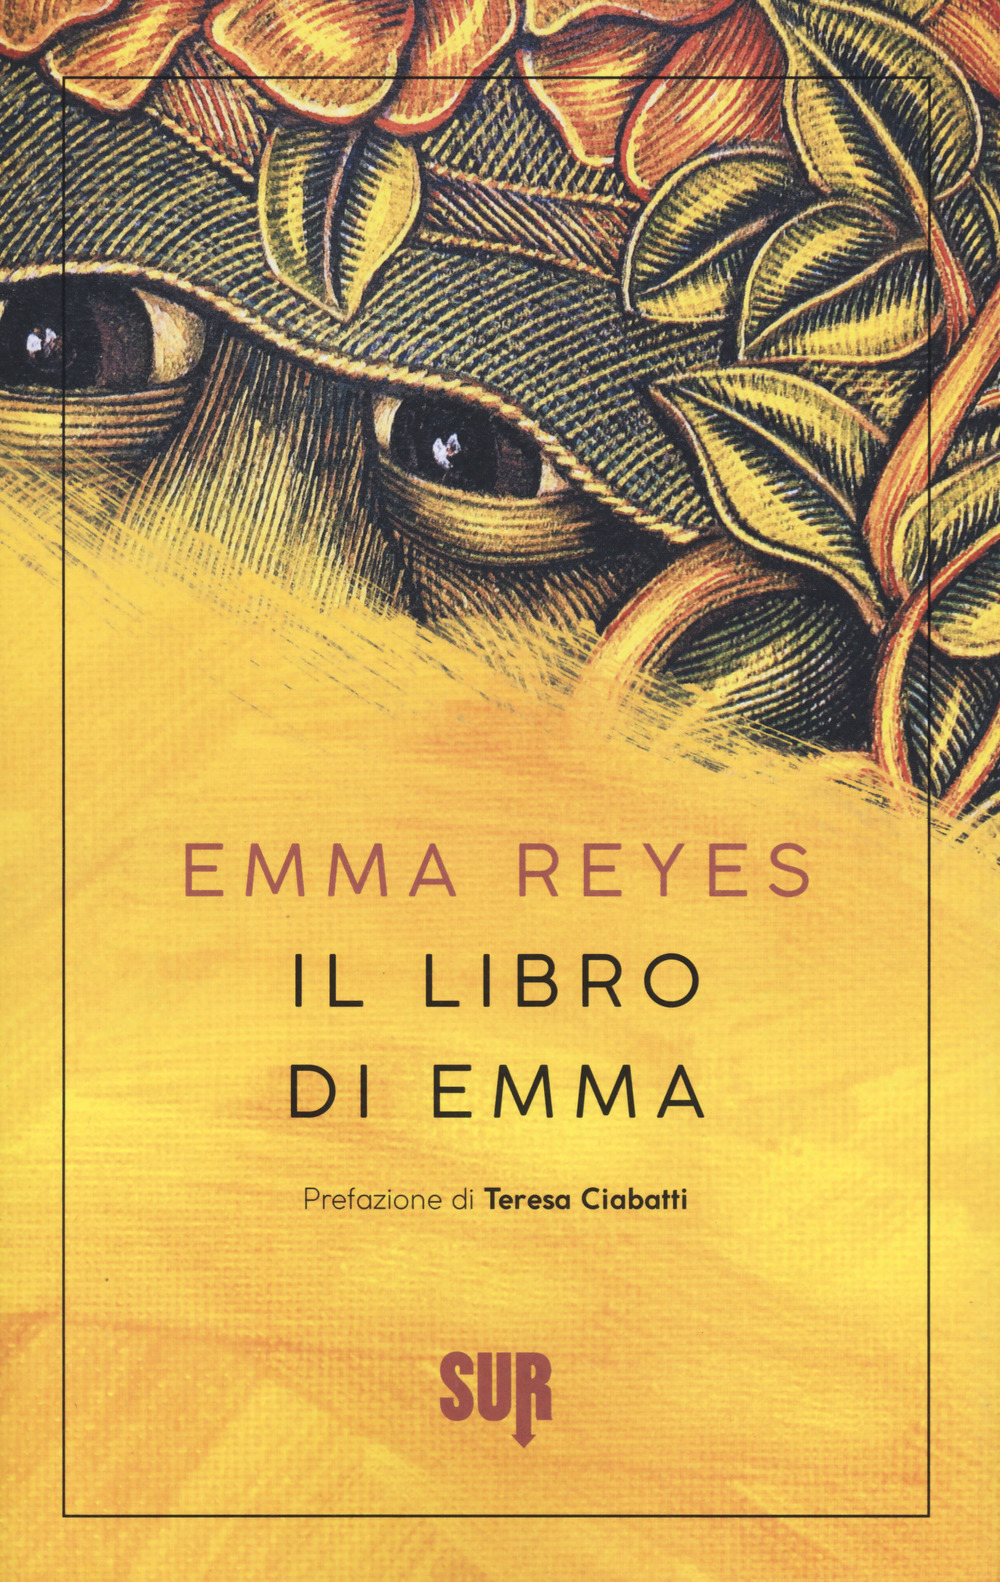 Il libro di Emma - Emma Reyes - Sur